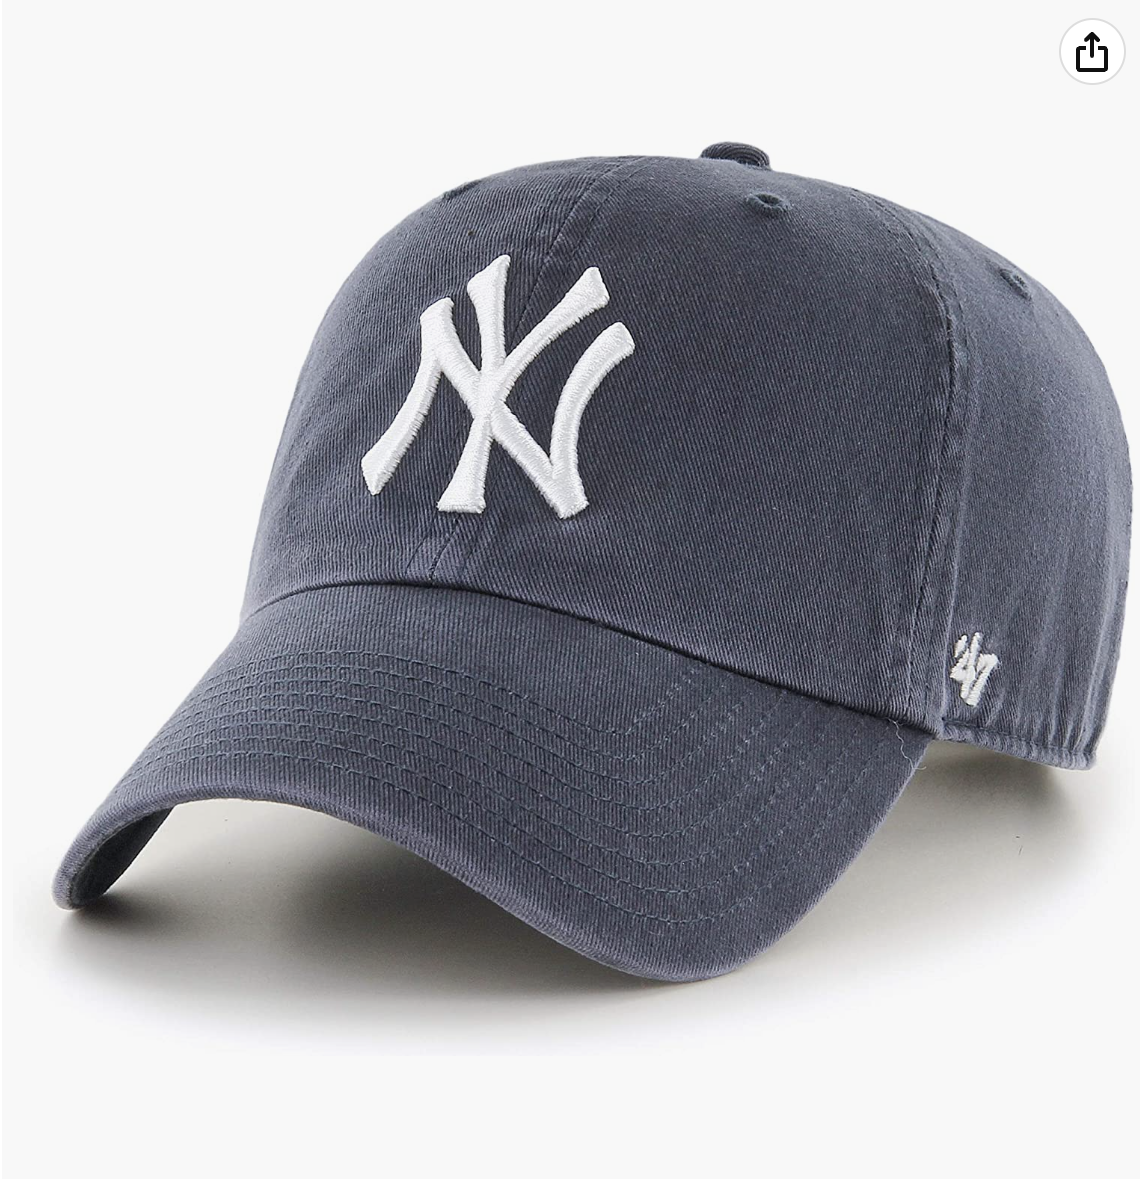 Baseball cap for women